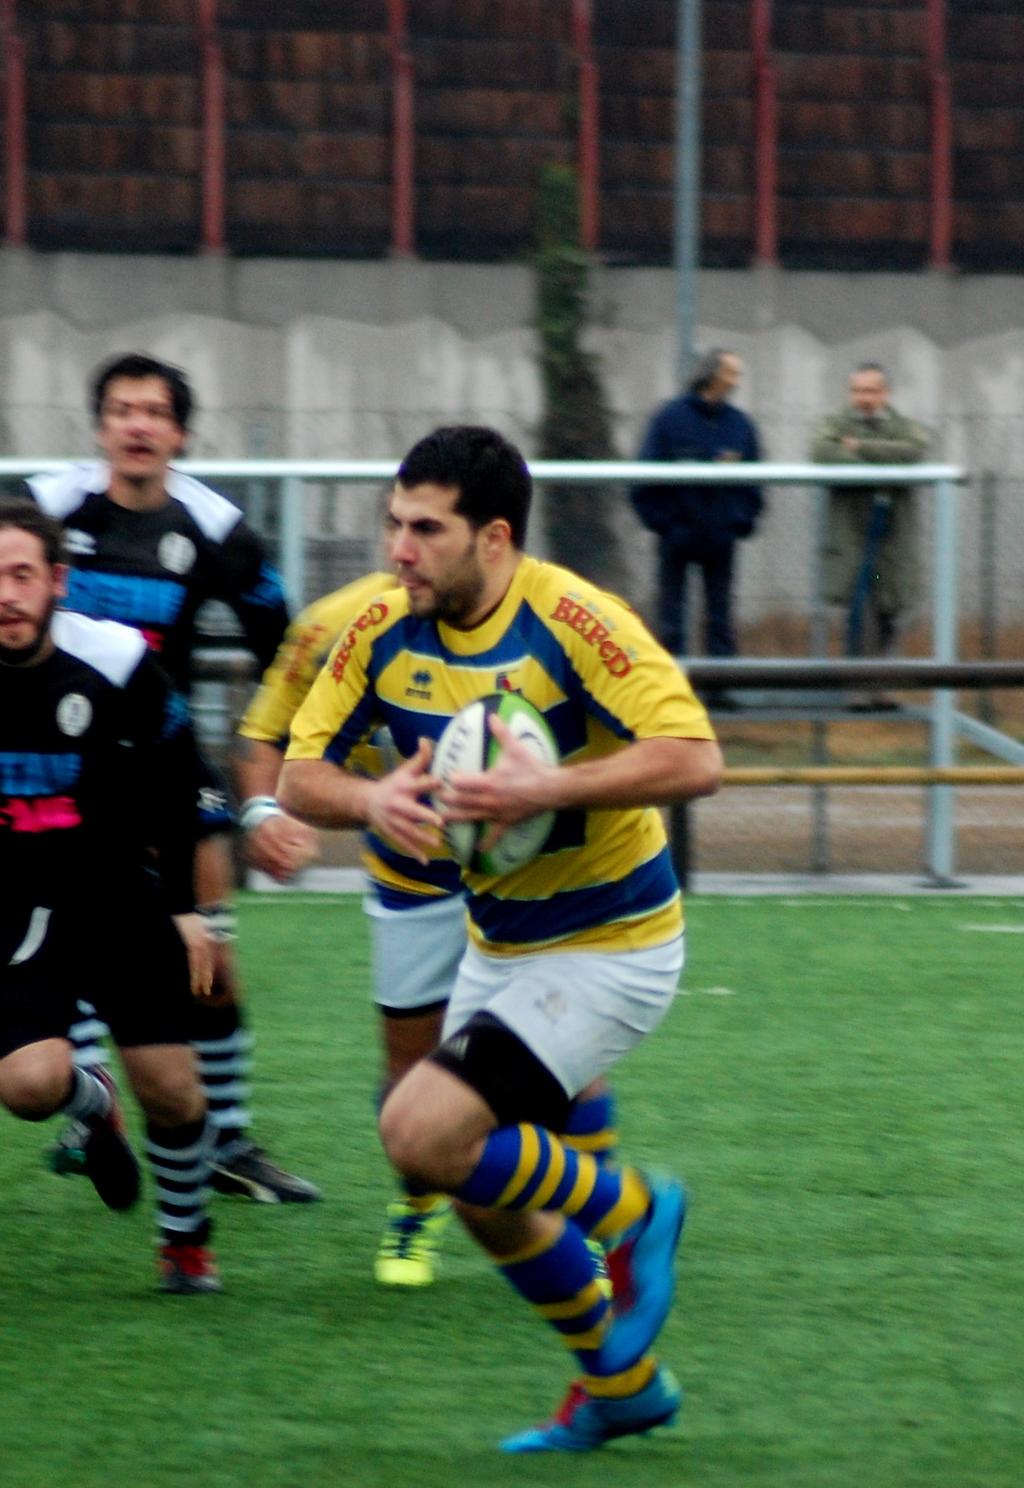 Periodico a cura del VII Rugby Torino.